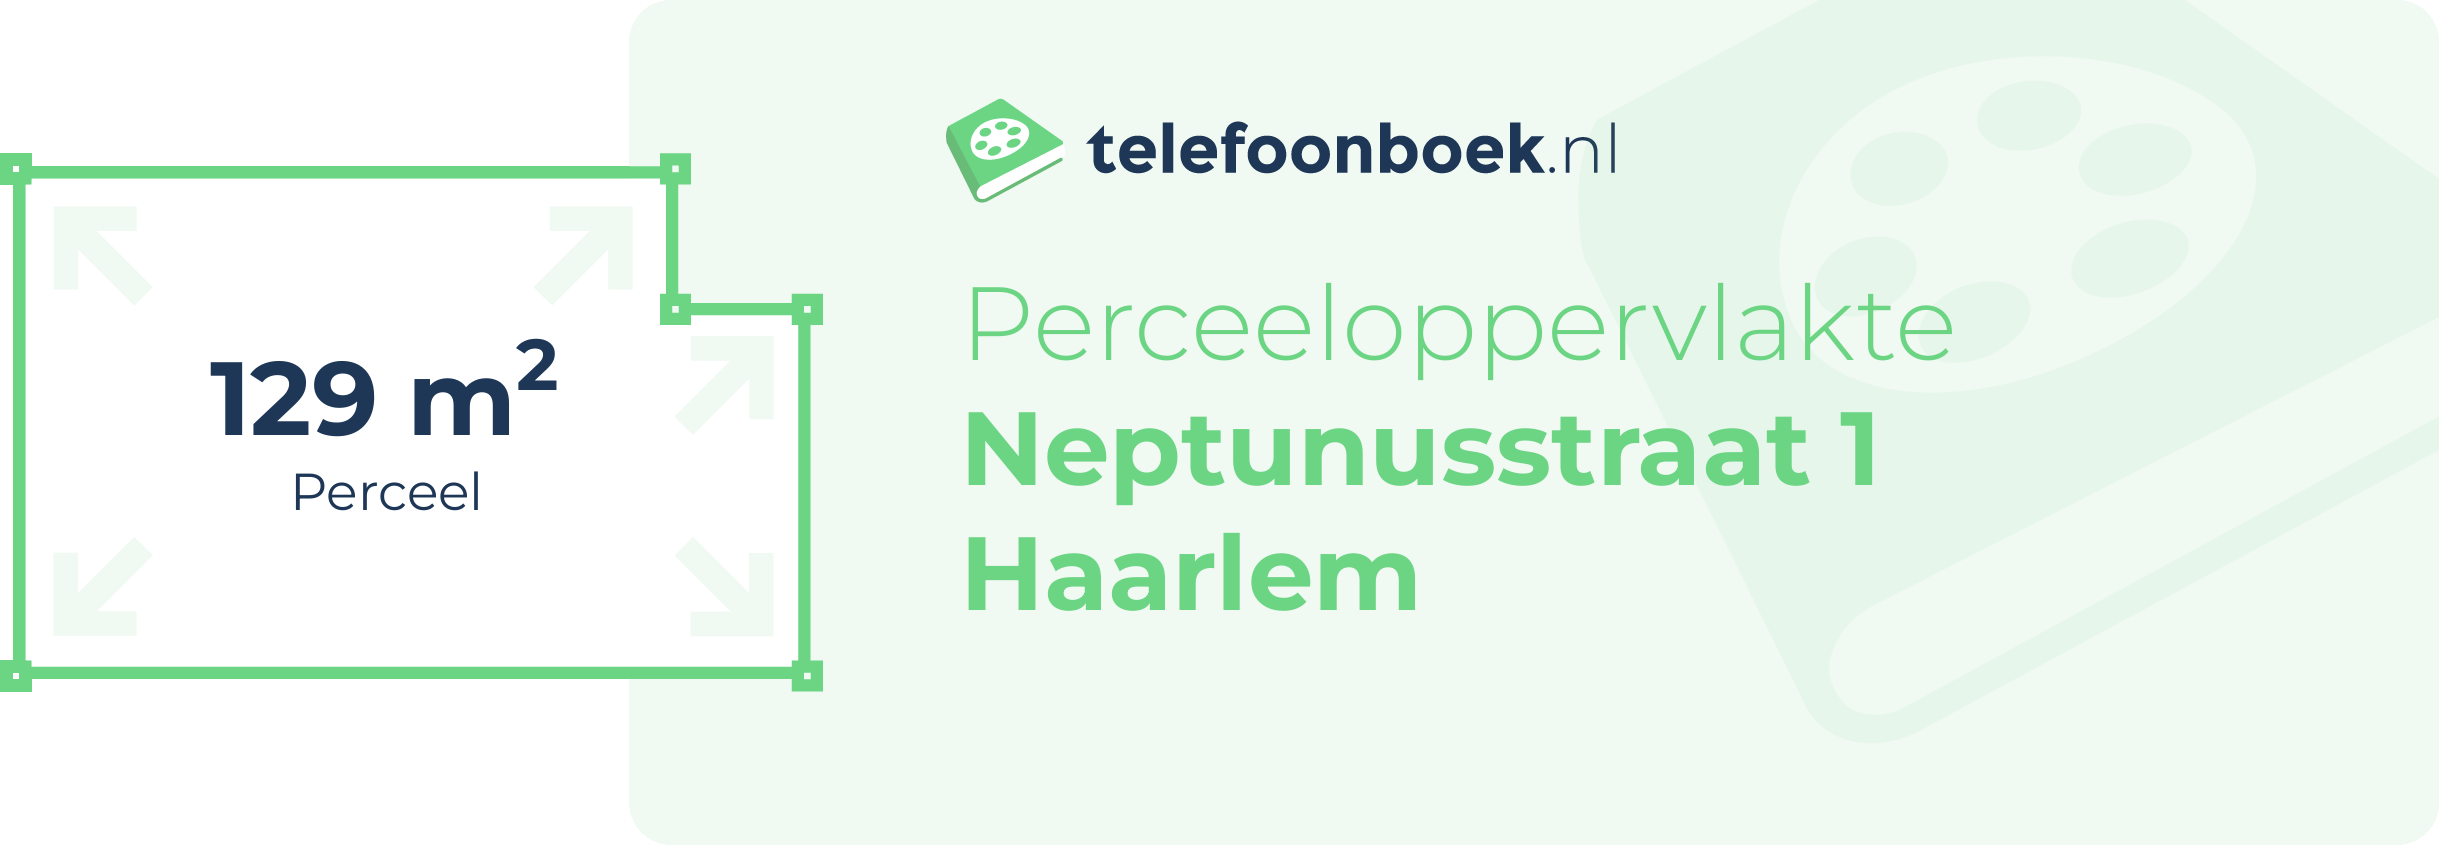 Perceeloppervlakte Neptunusstraat 1 Haarlem